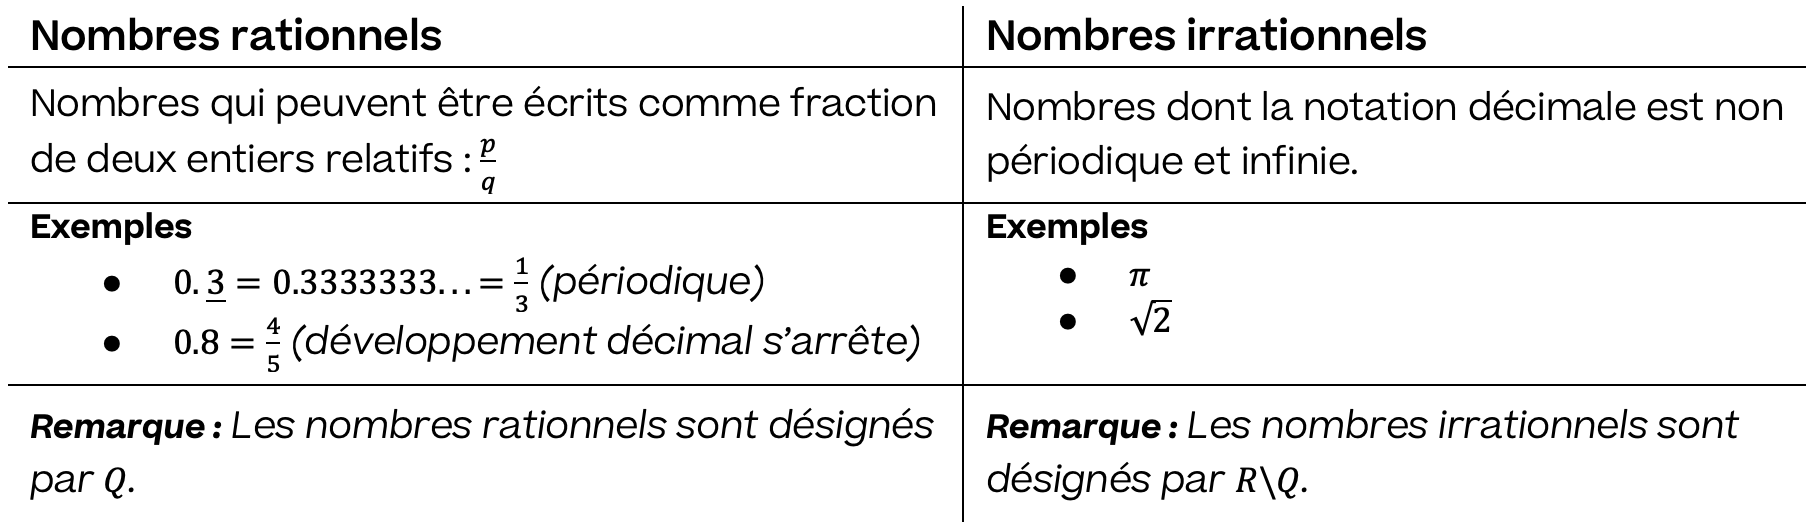 Mathématiques; Ensembles de nombres; 9e Harmos / CO; Nombres rationnels et irrationnels